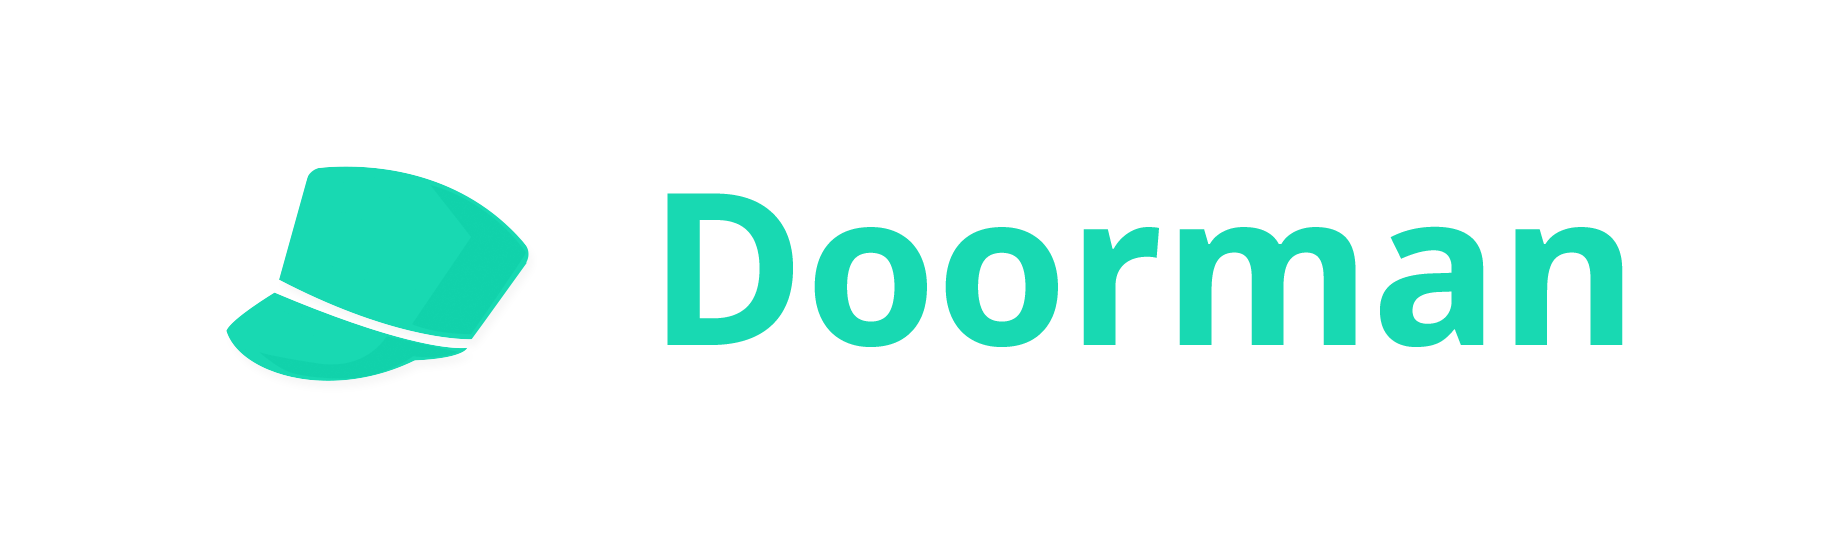 Doorman